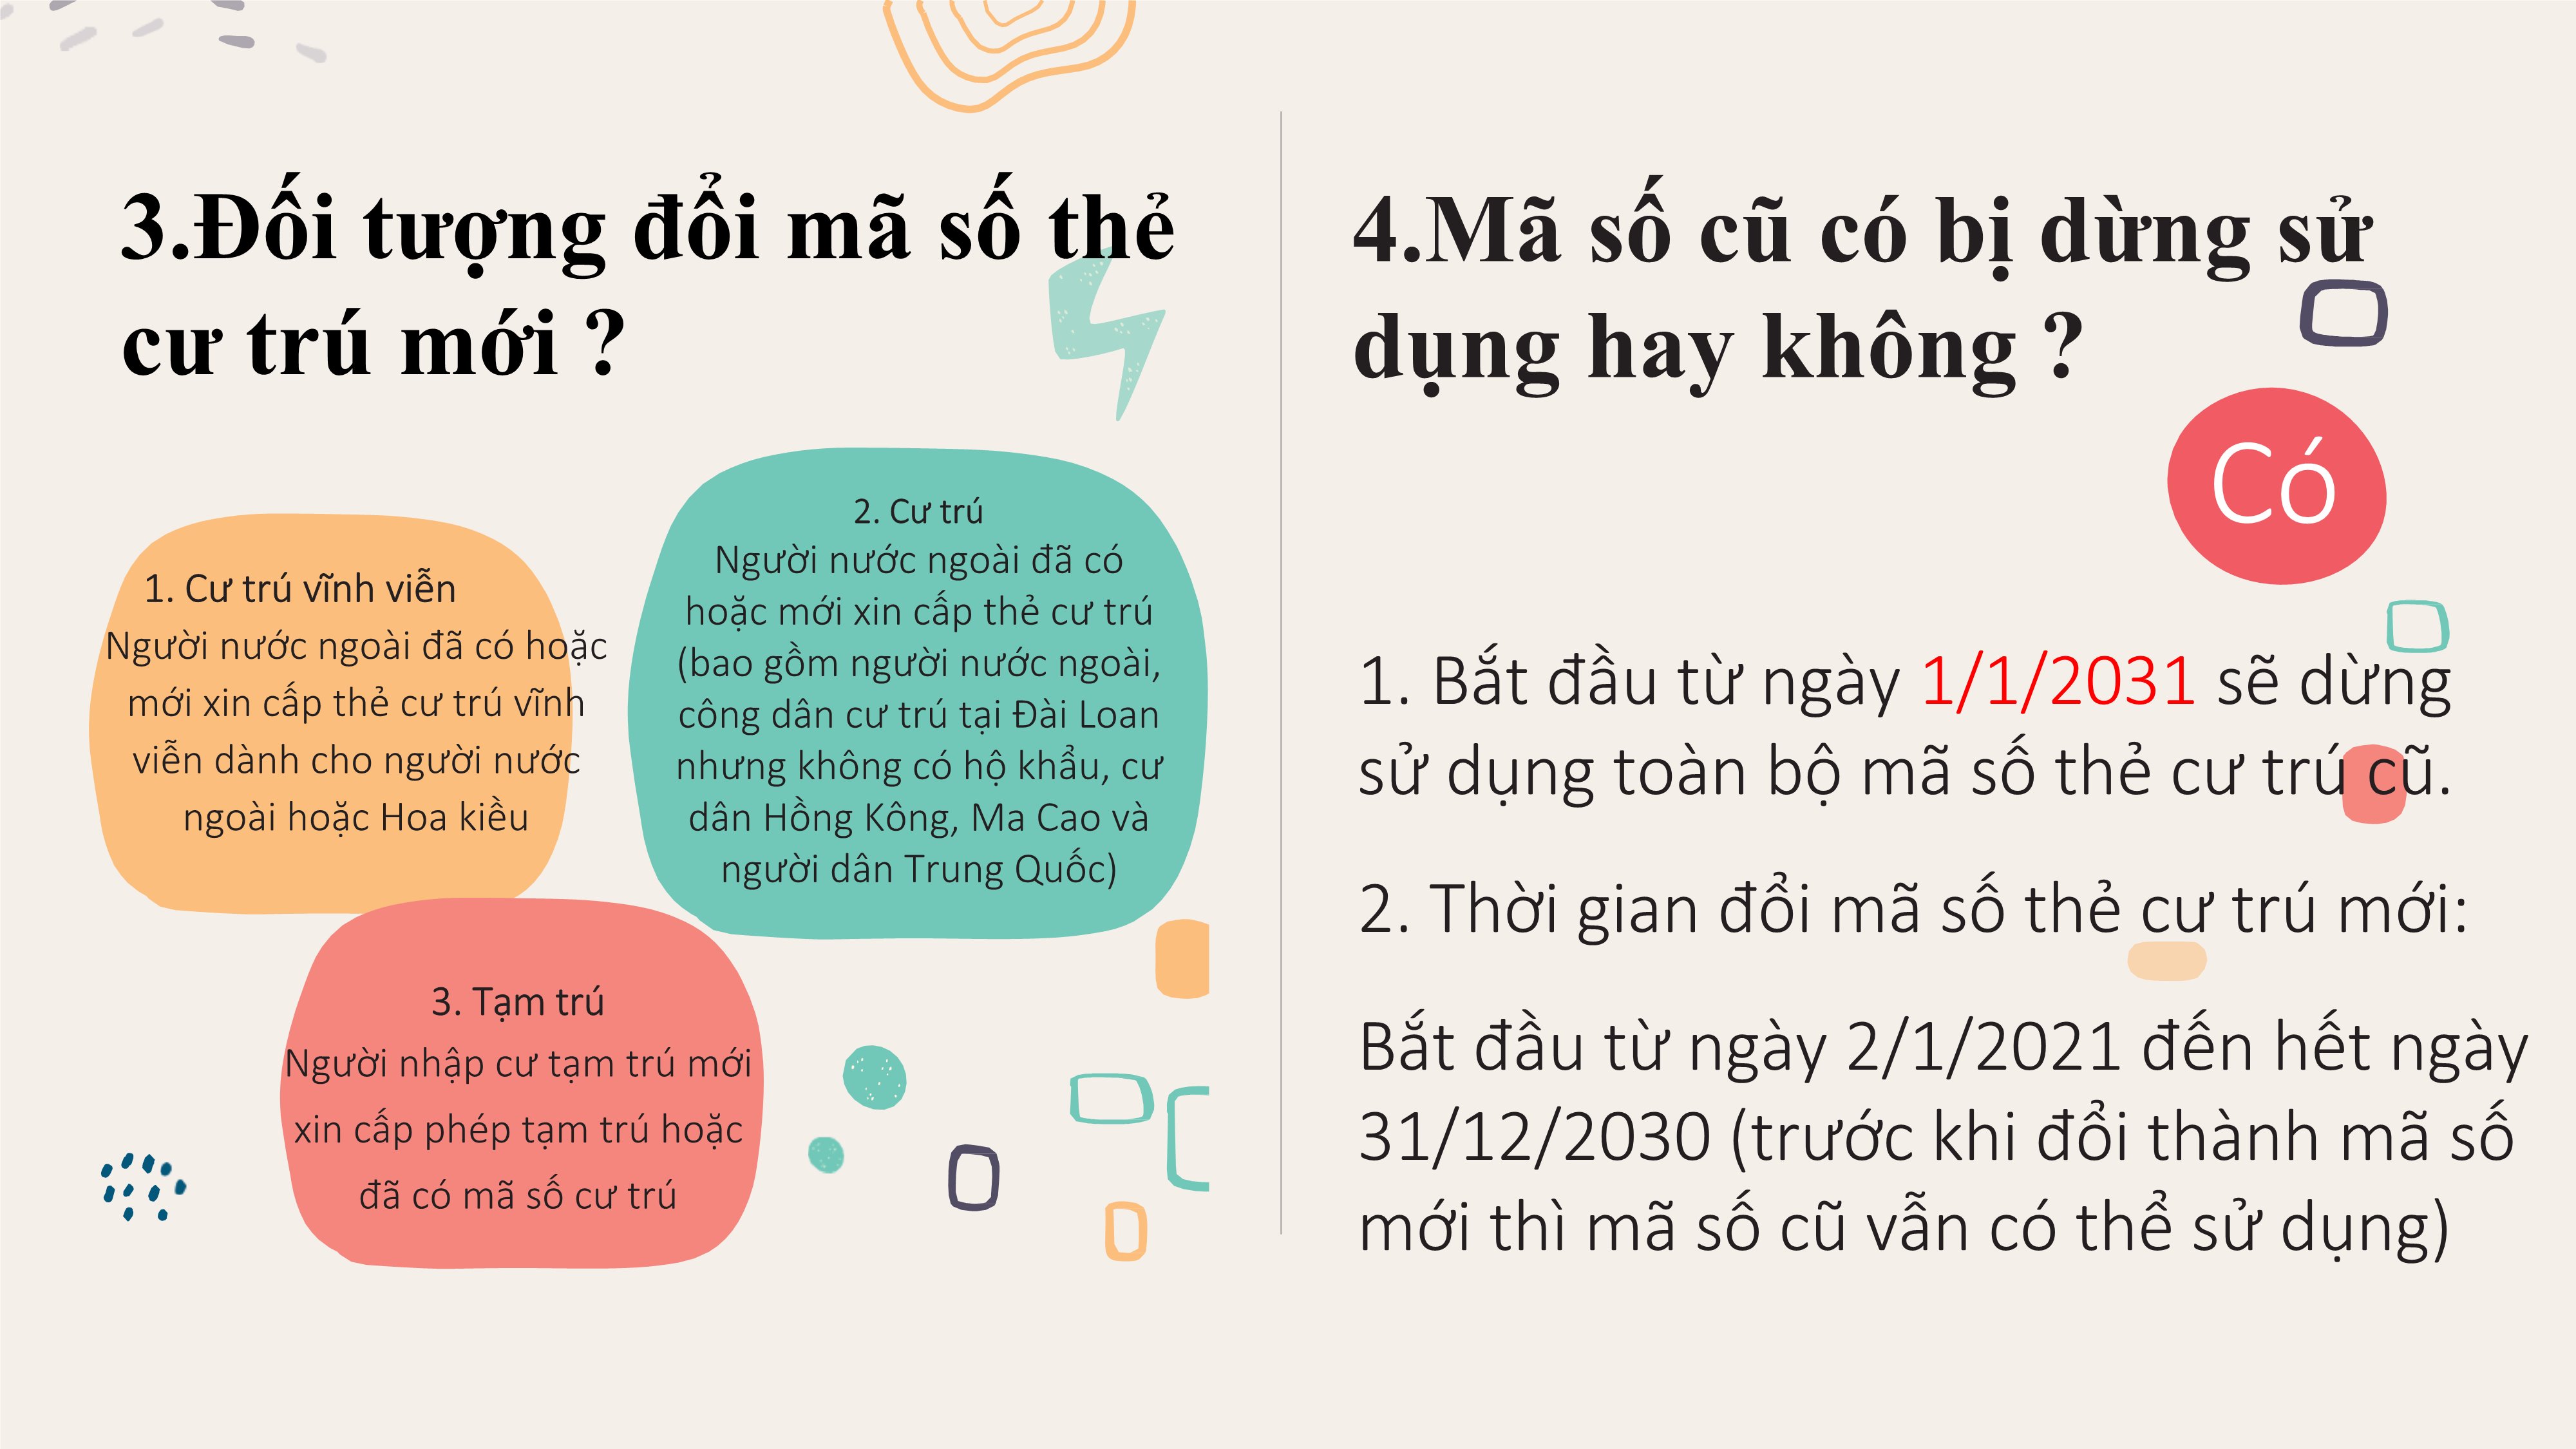 新式外來人口統一證號換發介紹-越南文